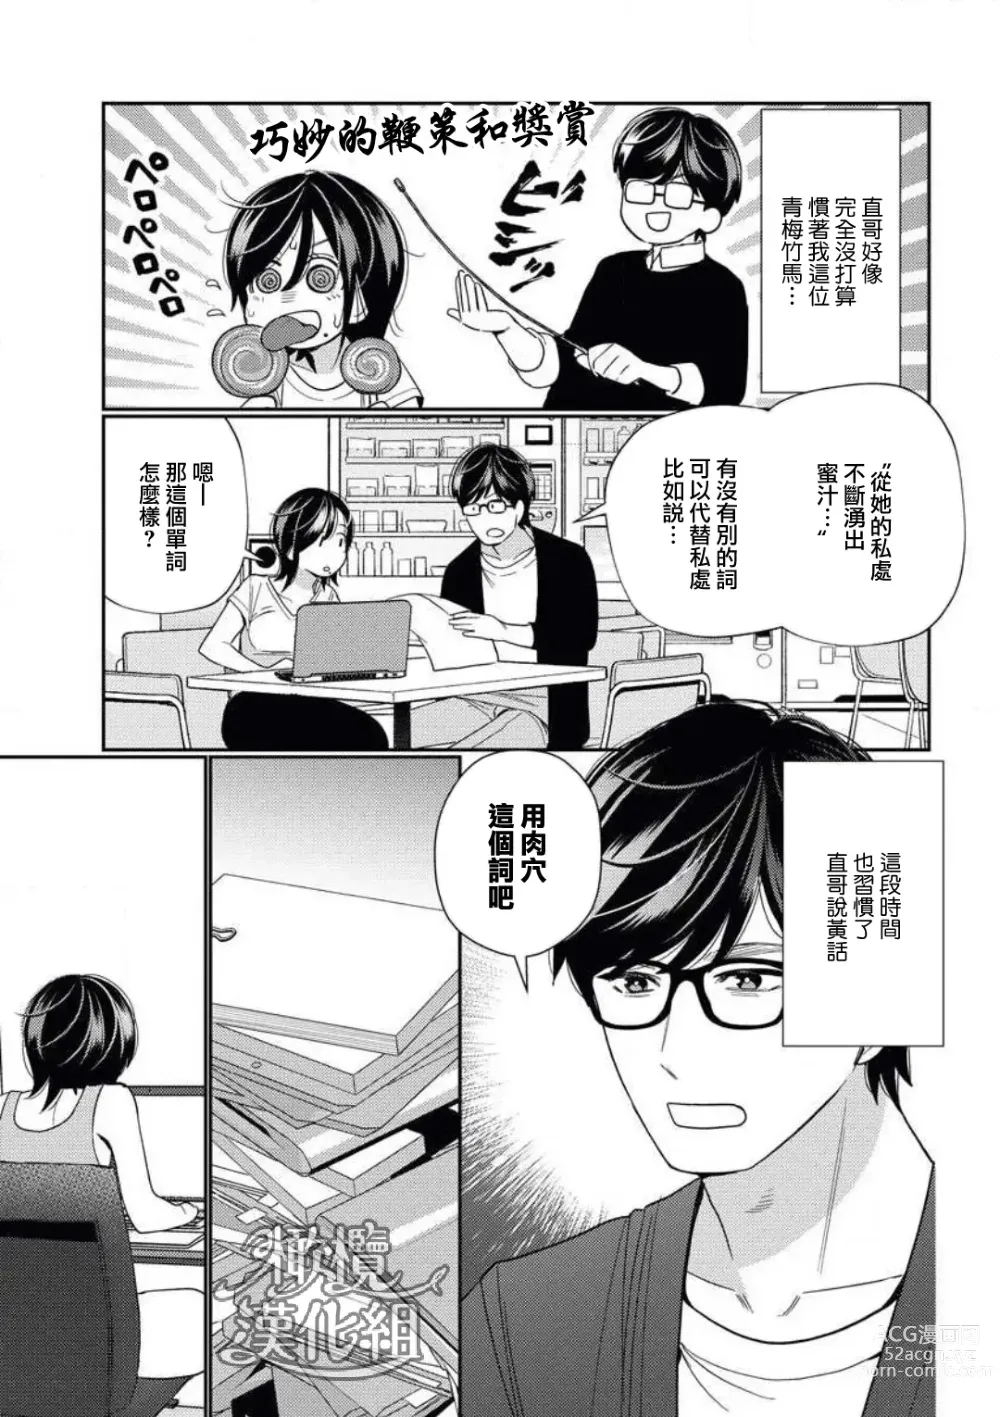 Page 19 of manga 青梅竹马难以攻陷被小黄话（※正当工作需求）玩弄一番